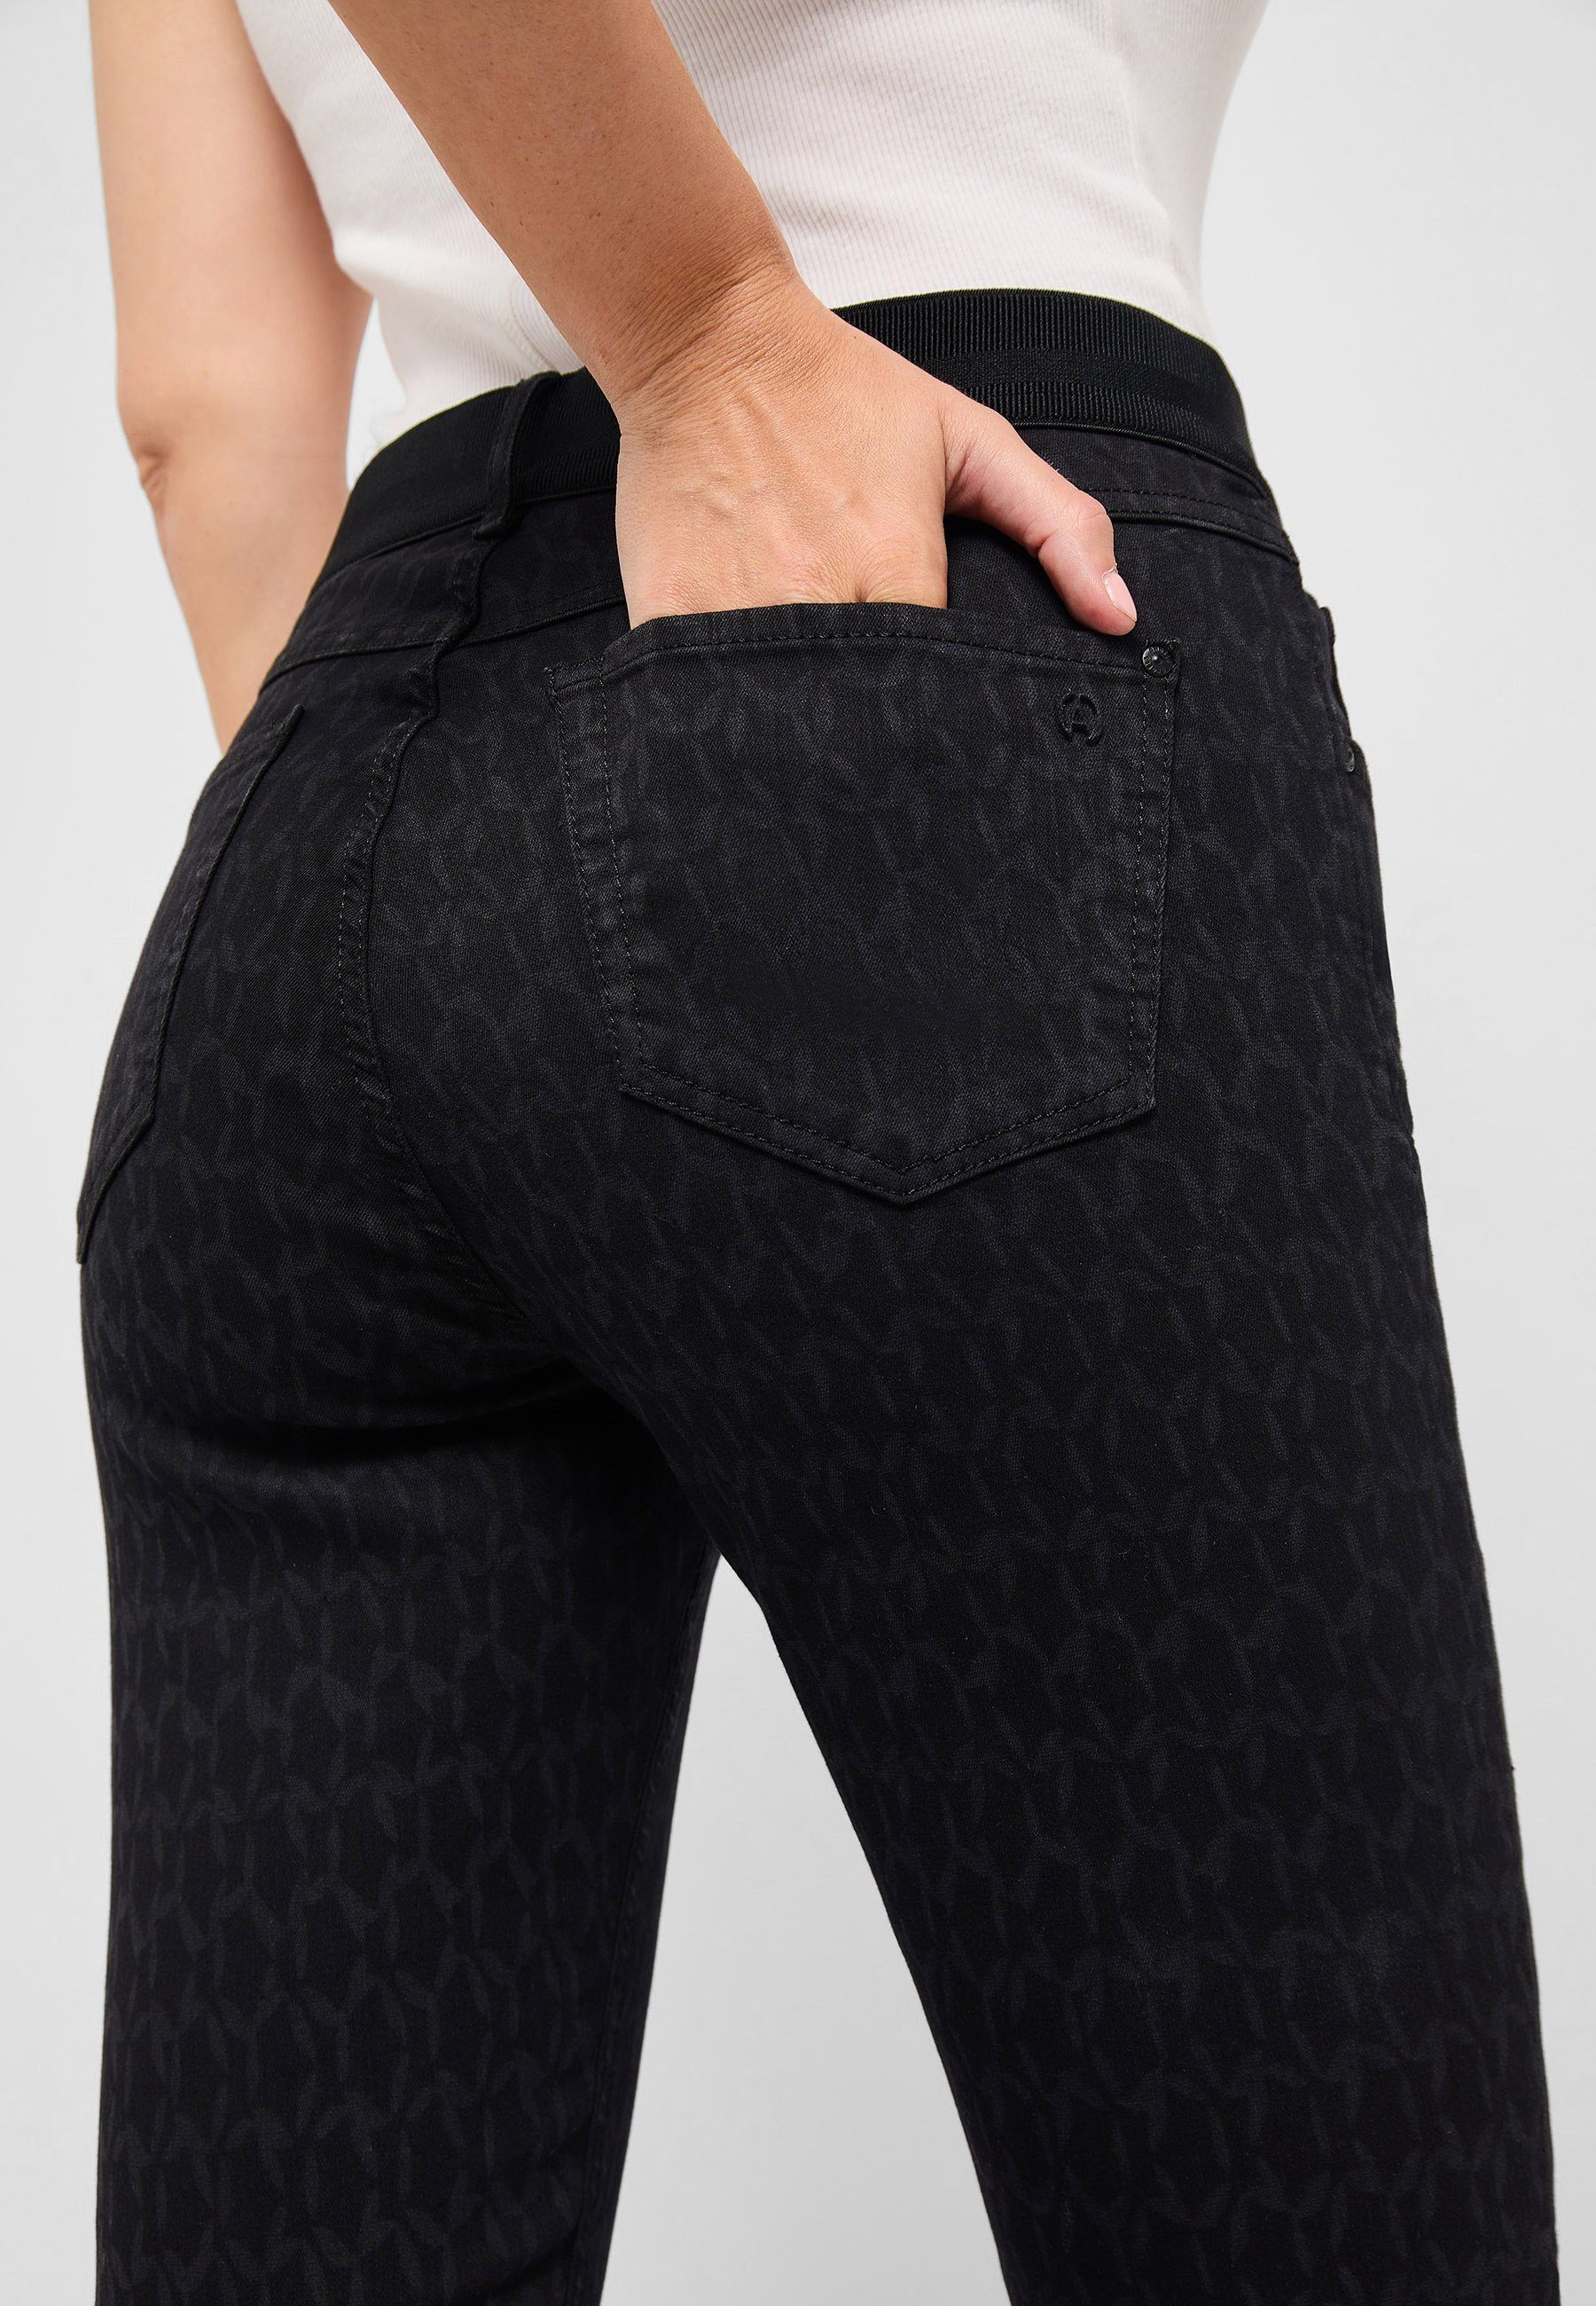 Jeans Grafic mit ANGELS Laser schwarz Reißverschluss One All Size mit 5-Pocket-Jeans Fits